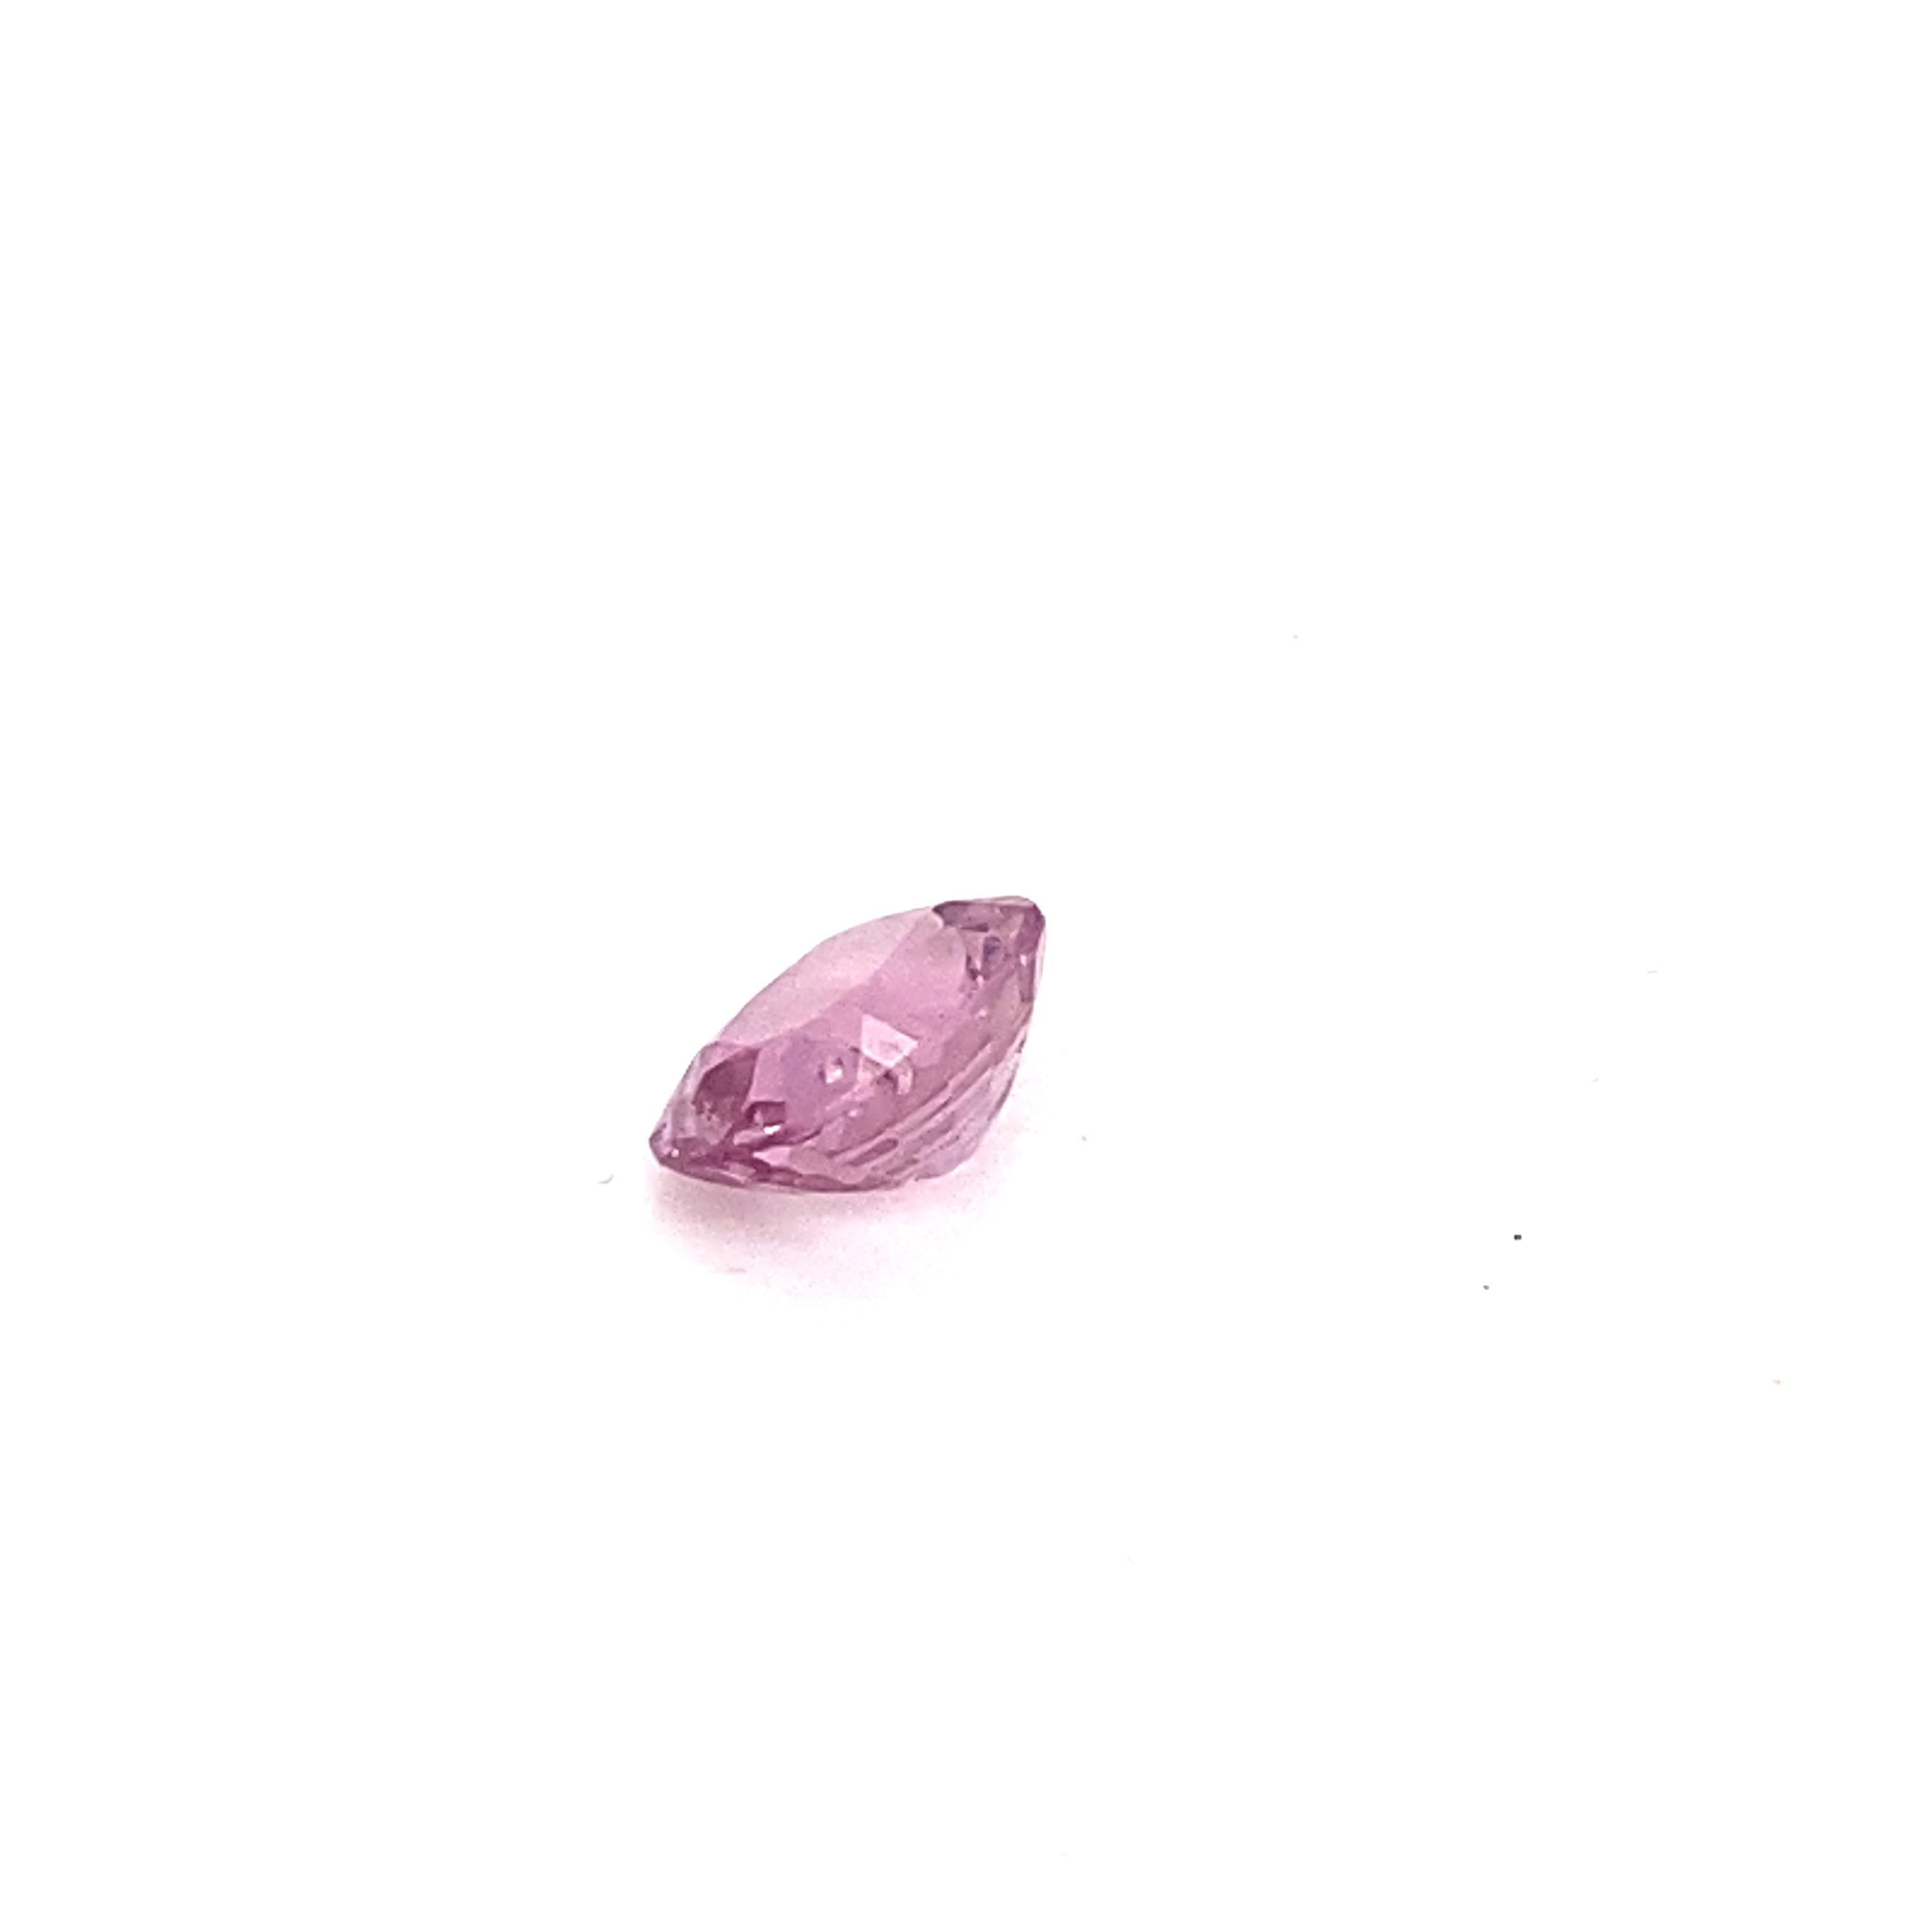 2.0 Carat Oval Shape Natural Pink Spinel Loose Gemstone For Sale 3